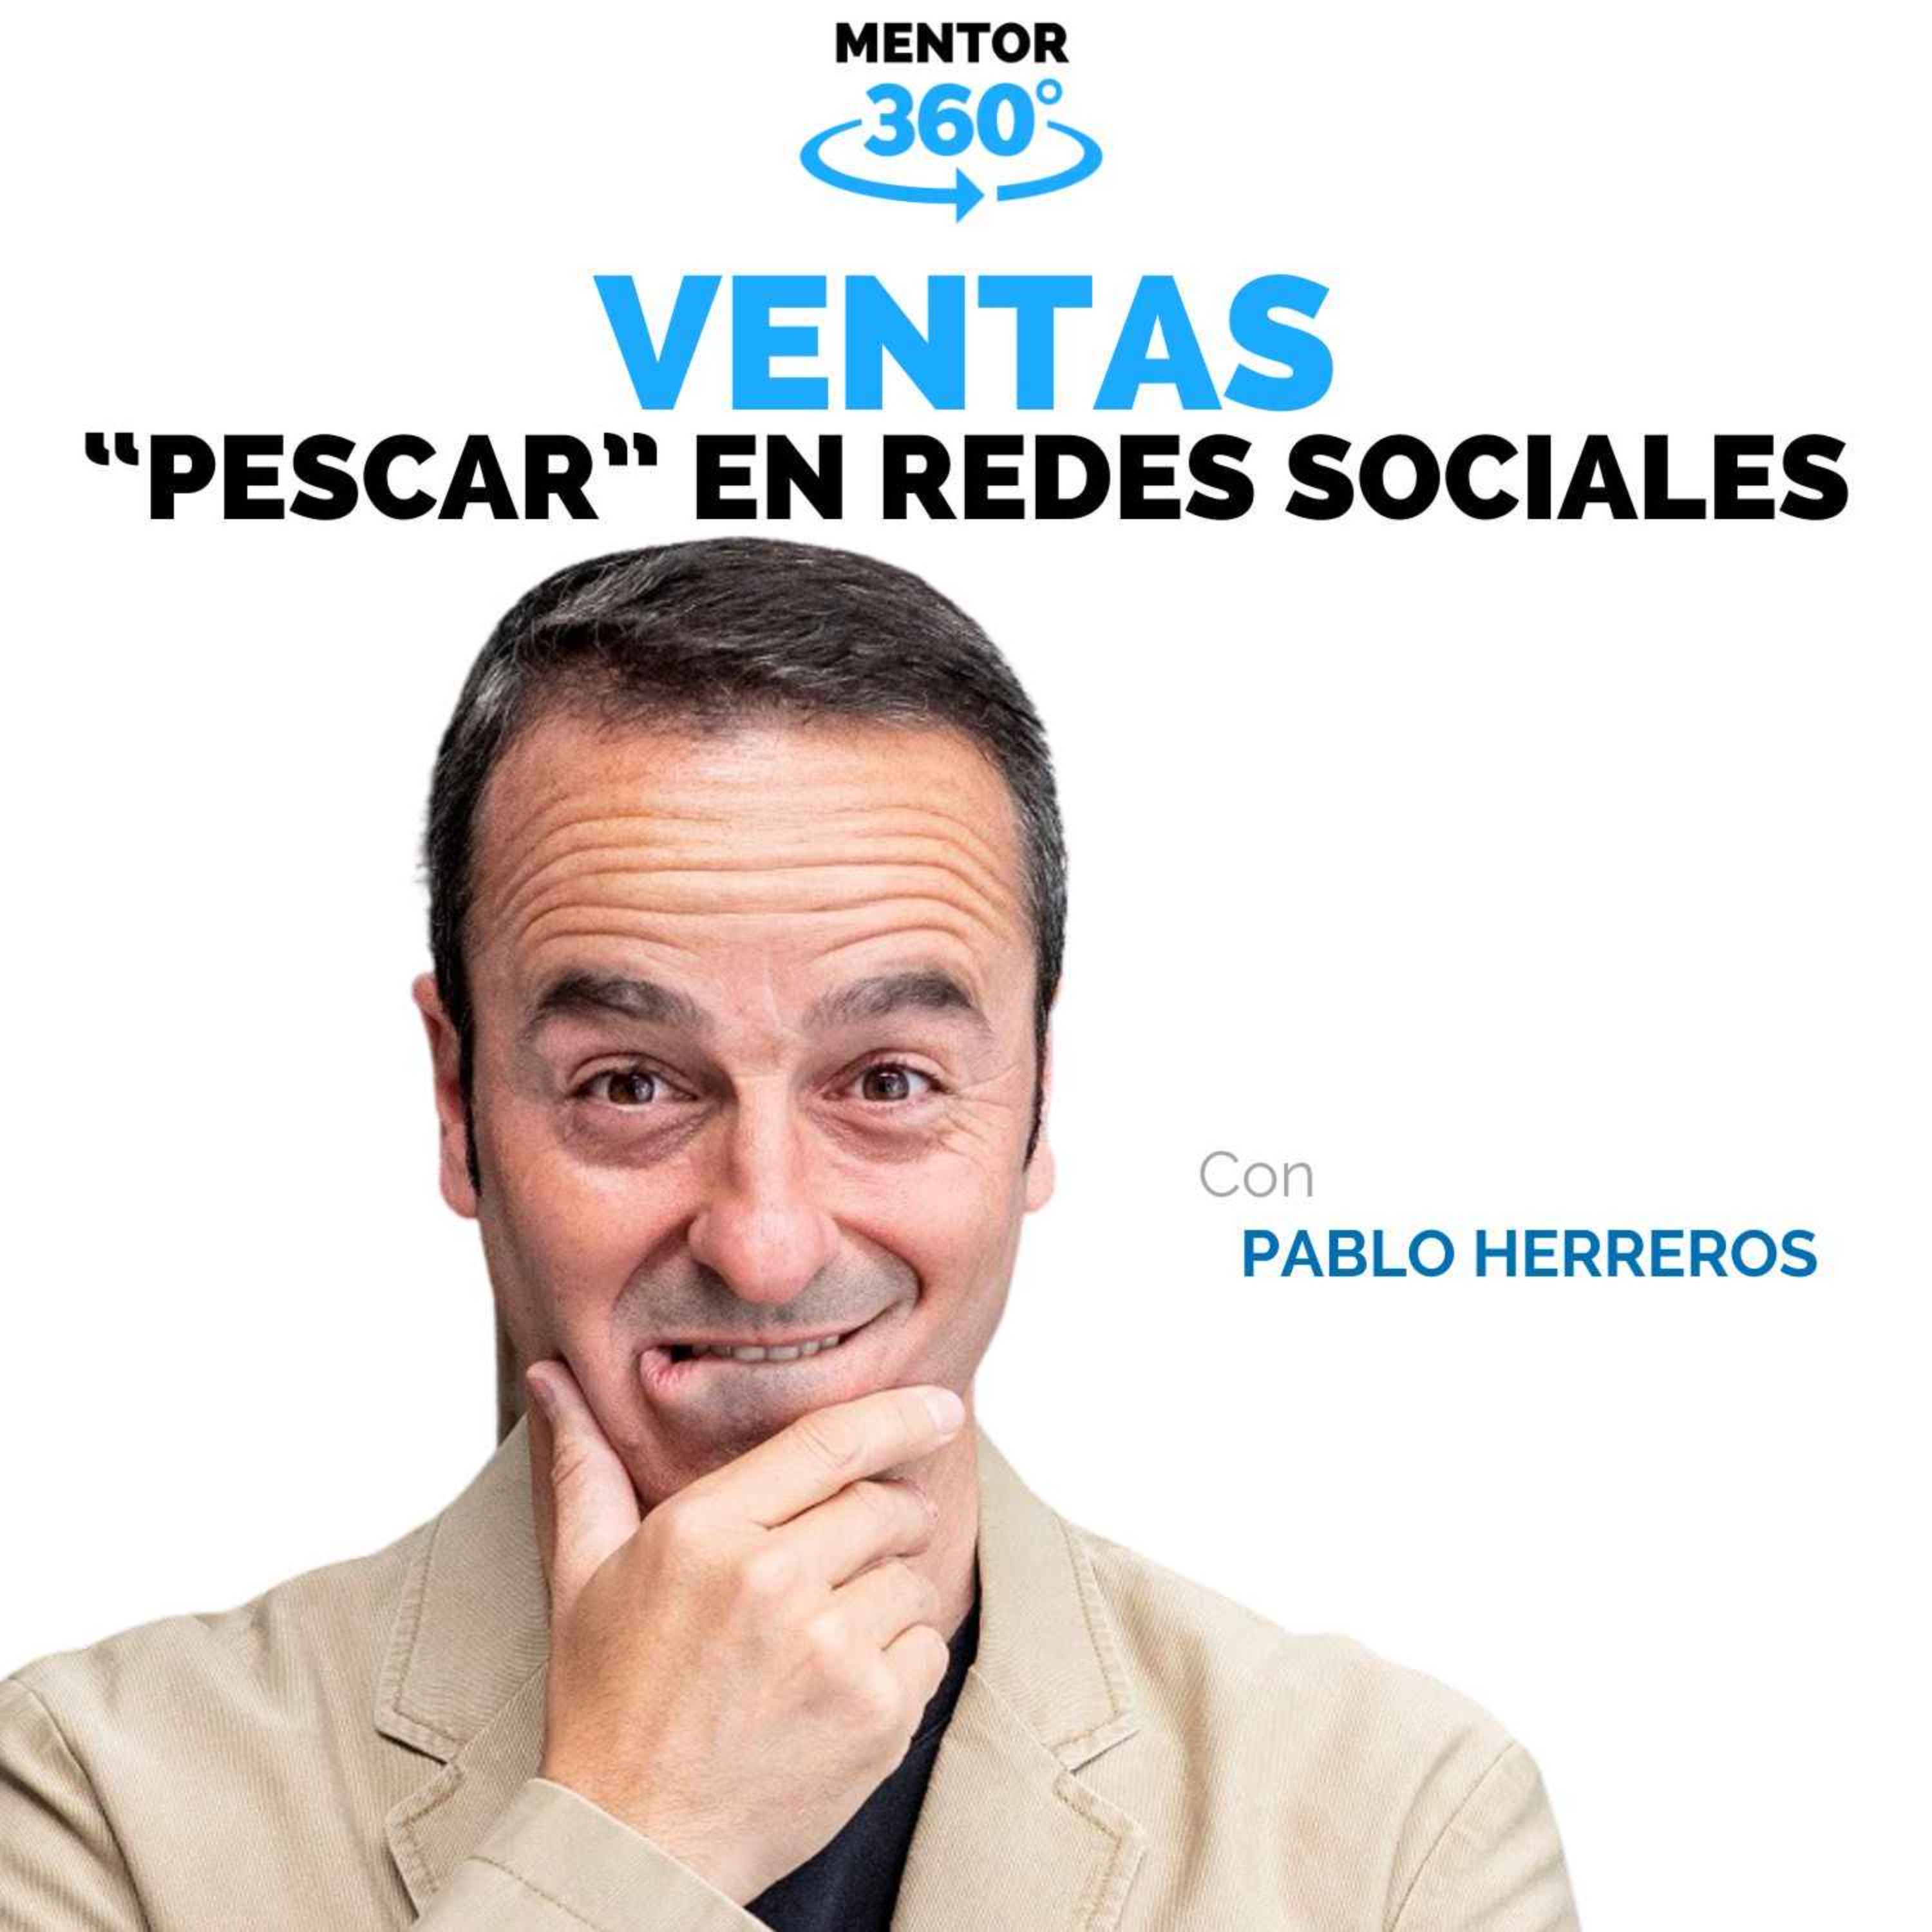 Pescar Ventas en las Redes Sociales - Pablo Herreros - Ventas - MENTOR360